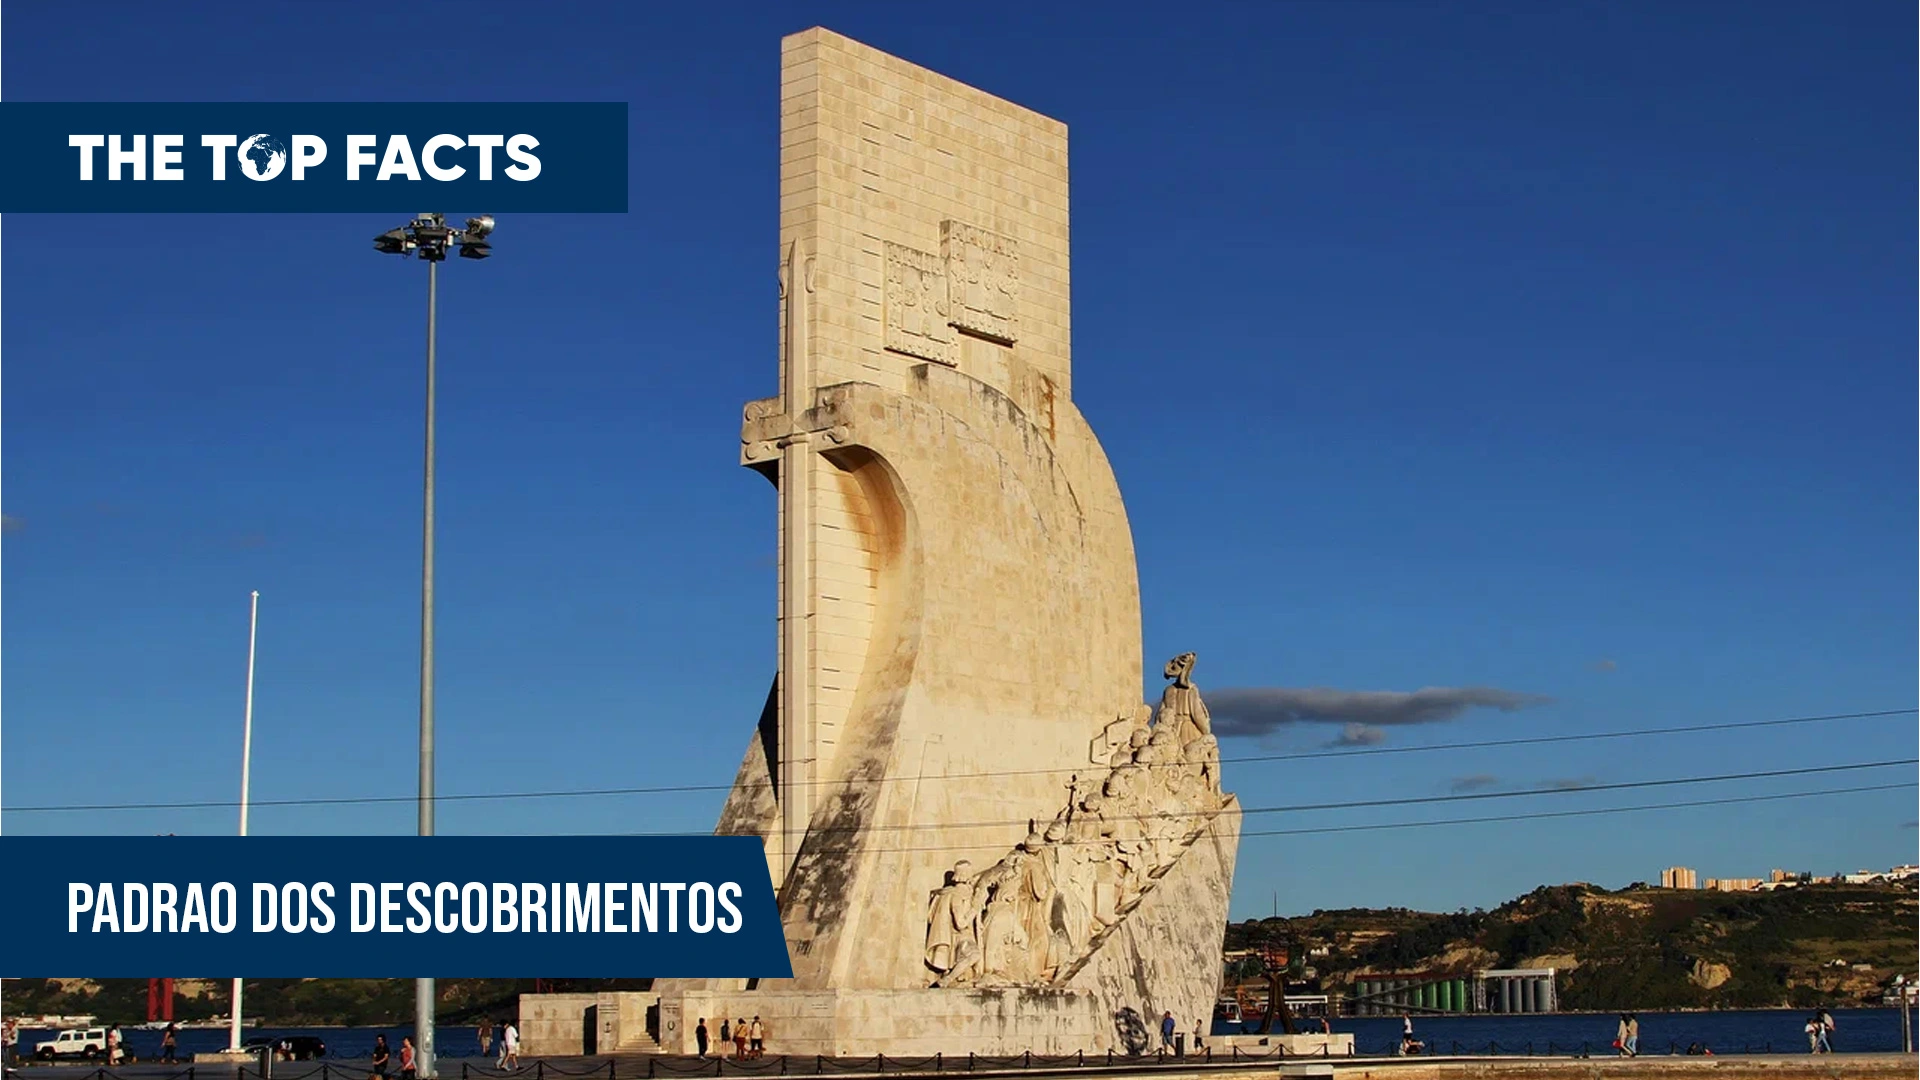 The Monument of the Discoveries - Padrao dos Descobrimentos